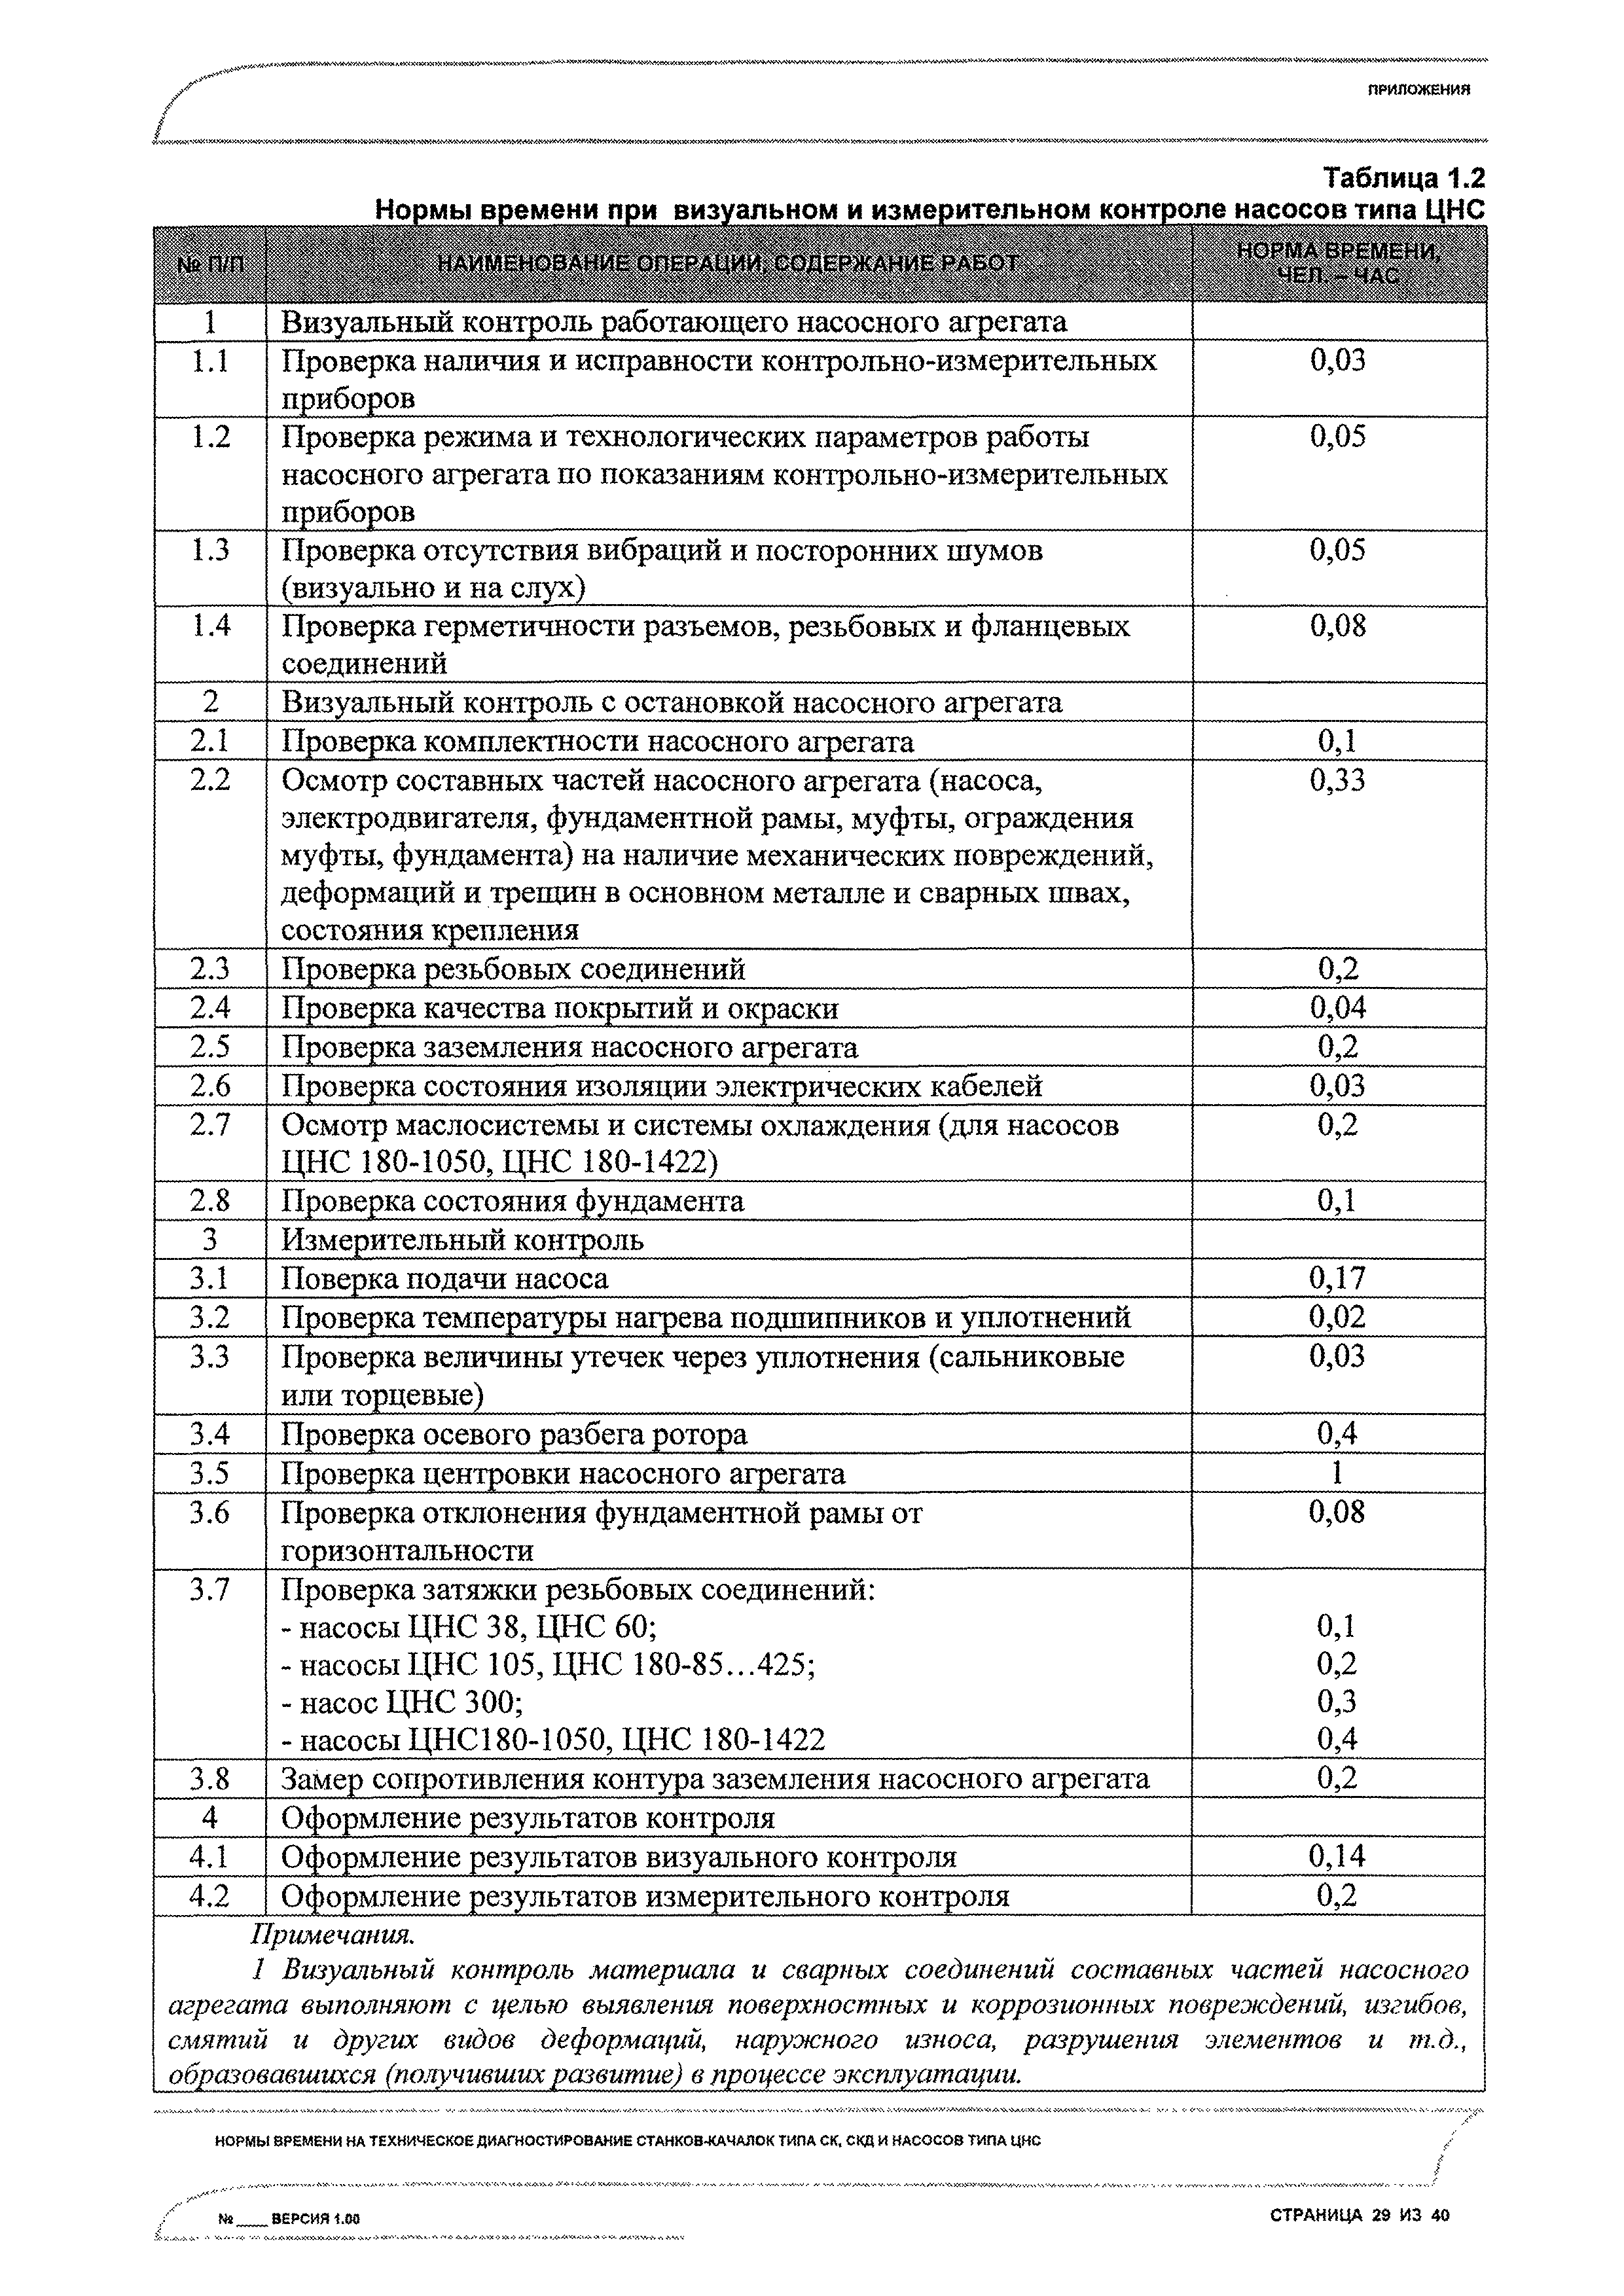 Таблица видов станков качалок СКД